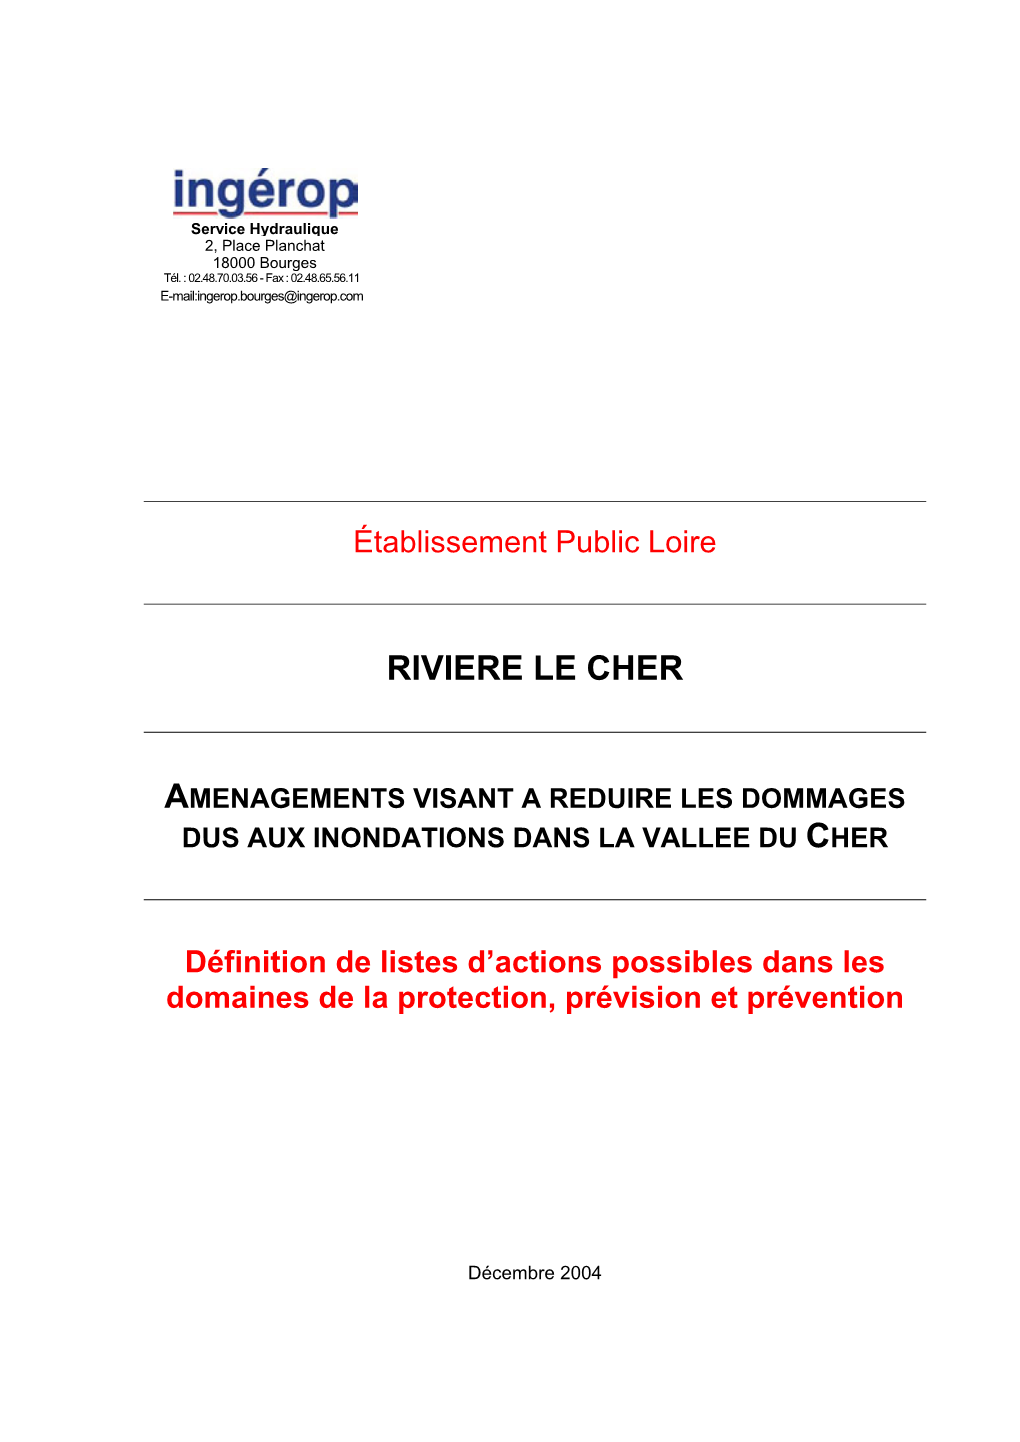 Riviere Le Cher